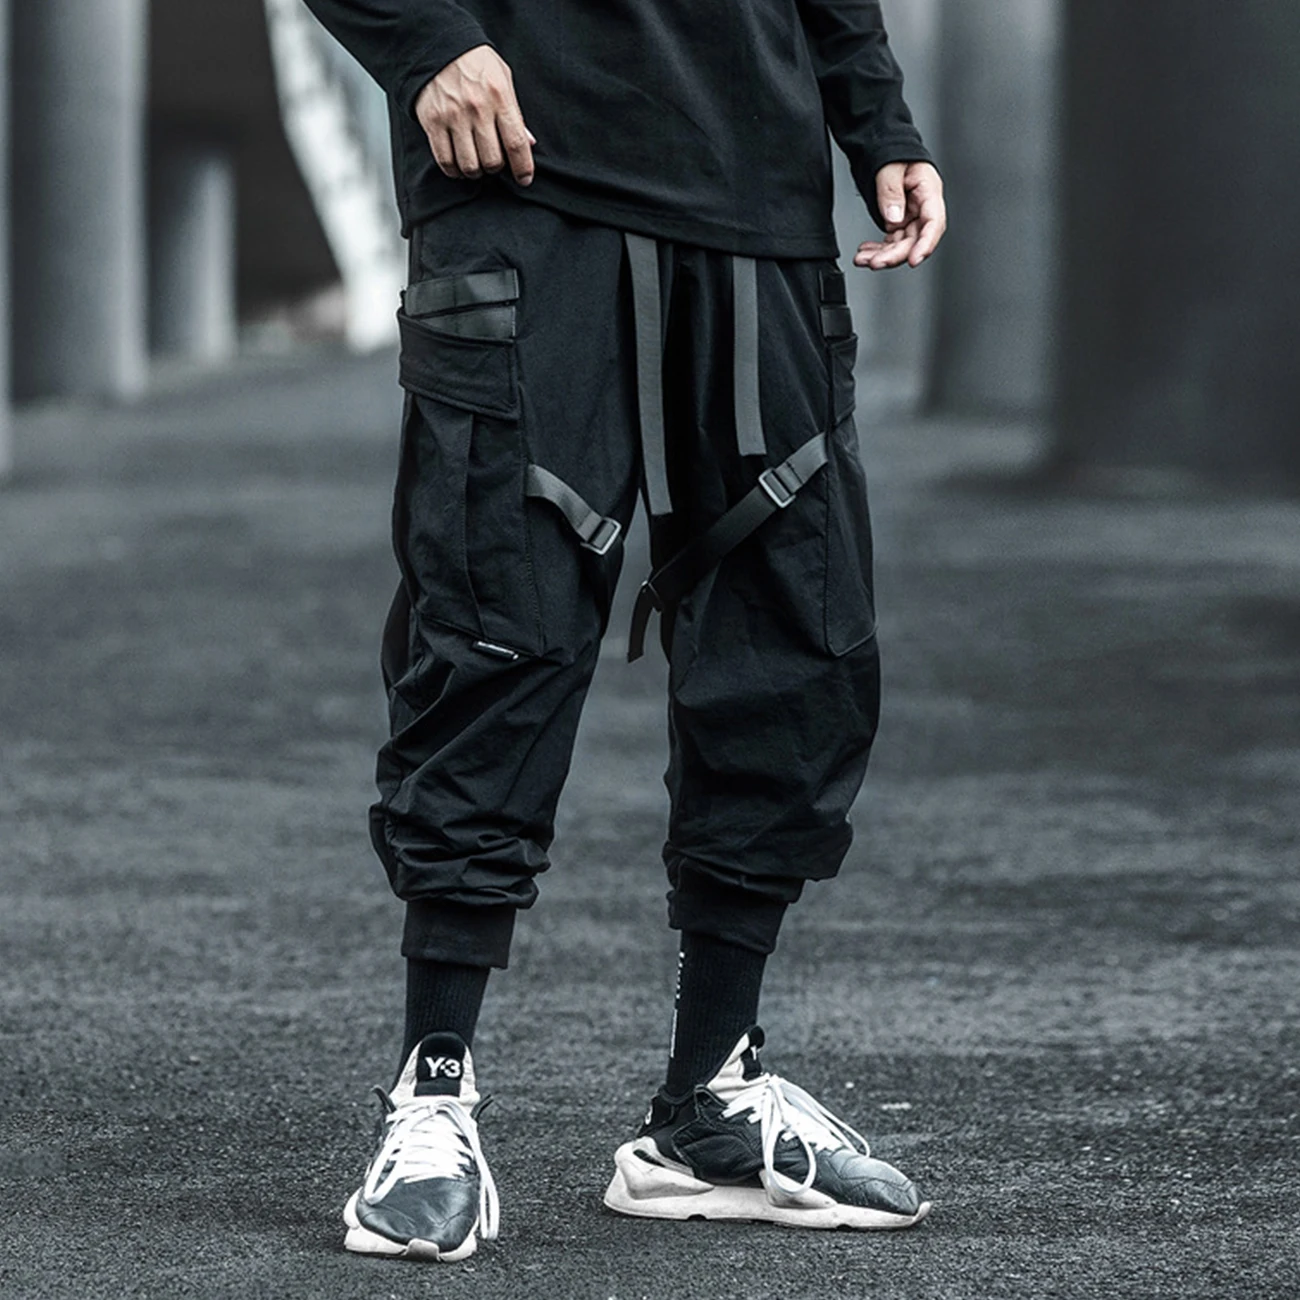 11 BYBB ESCURO 2020 Streetwear Multi-Bolsos Fitas de Carga Calça de Homem Hip Hop Tático Função Calças de Elástico Jogger Homens Calças Imagem 1